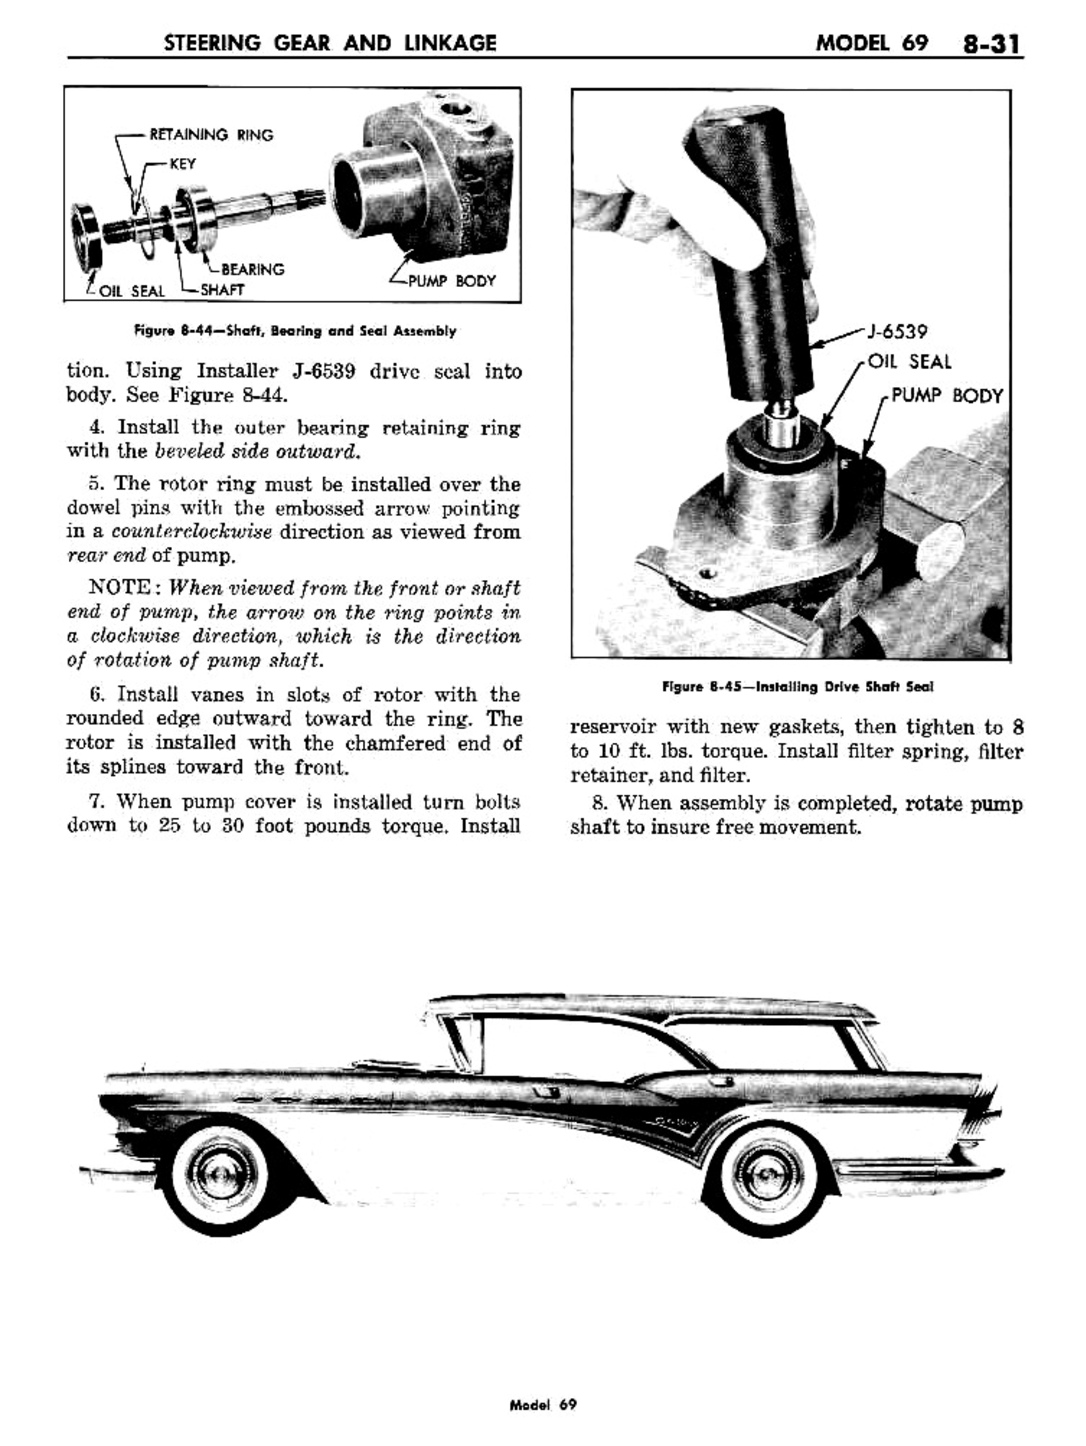 n_09 1957 Buick Shop Manual - Steering-031-031.jpg